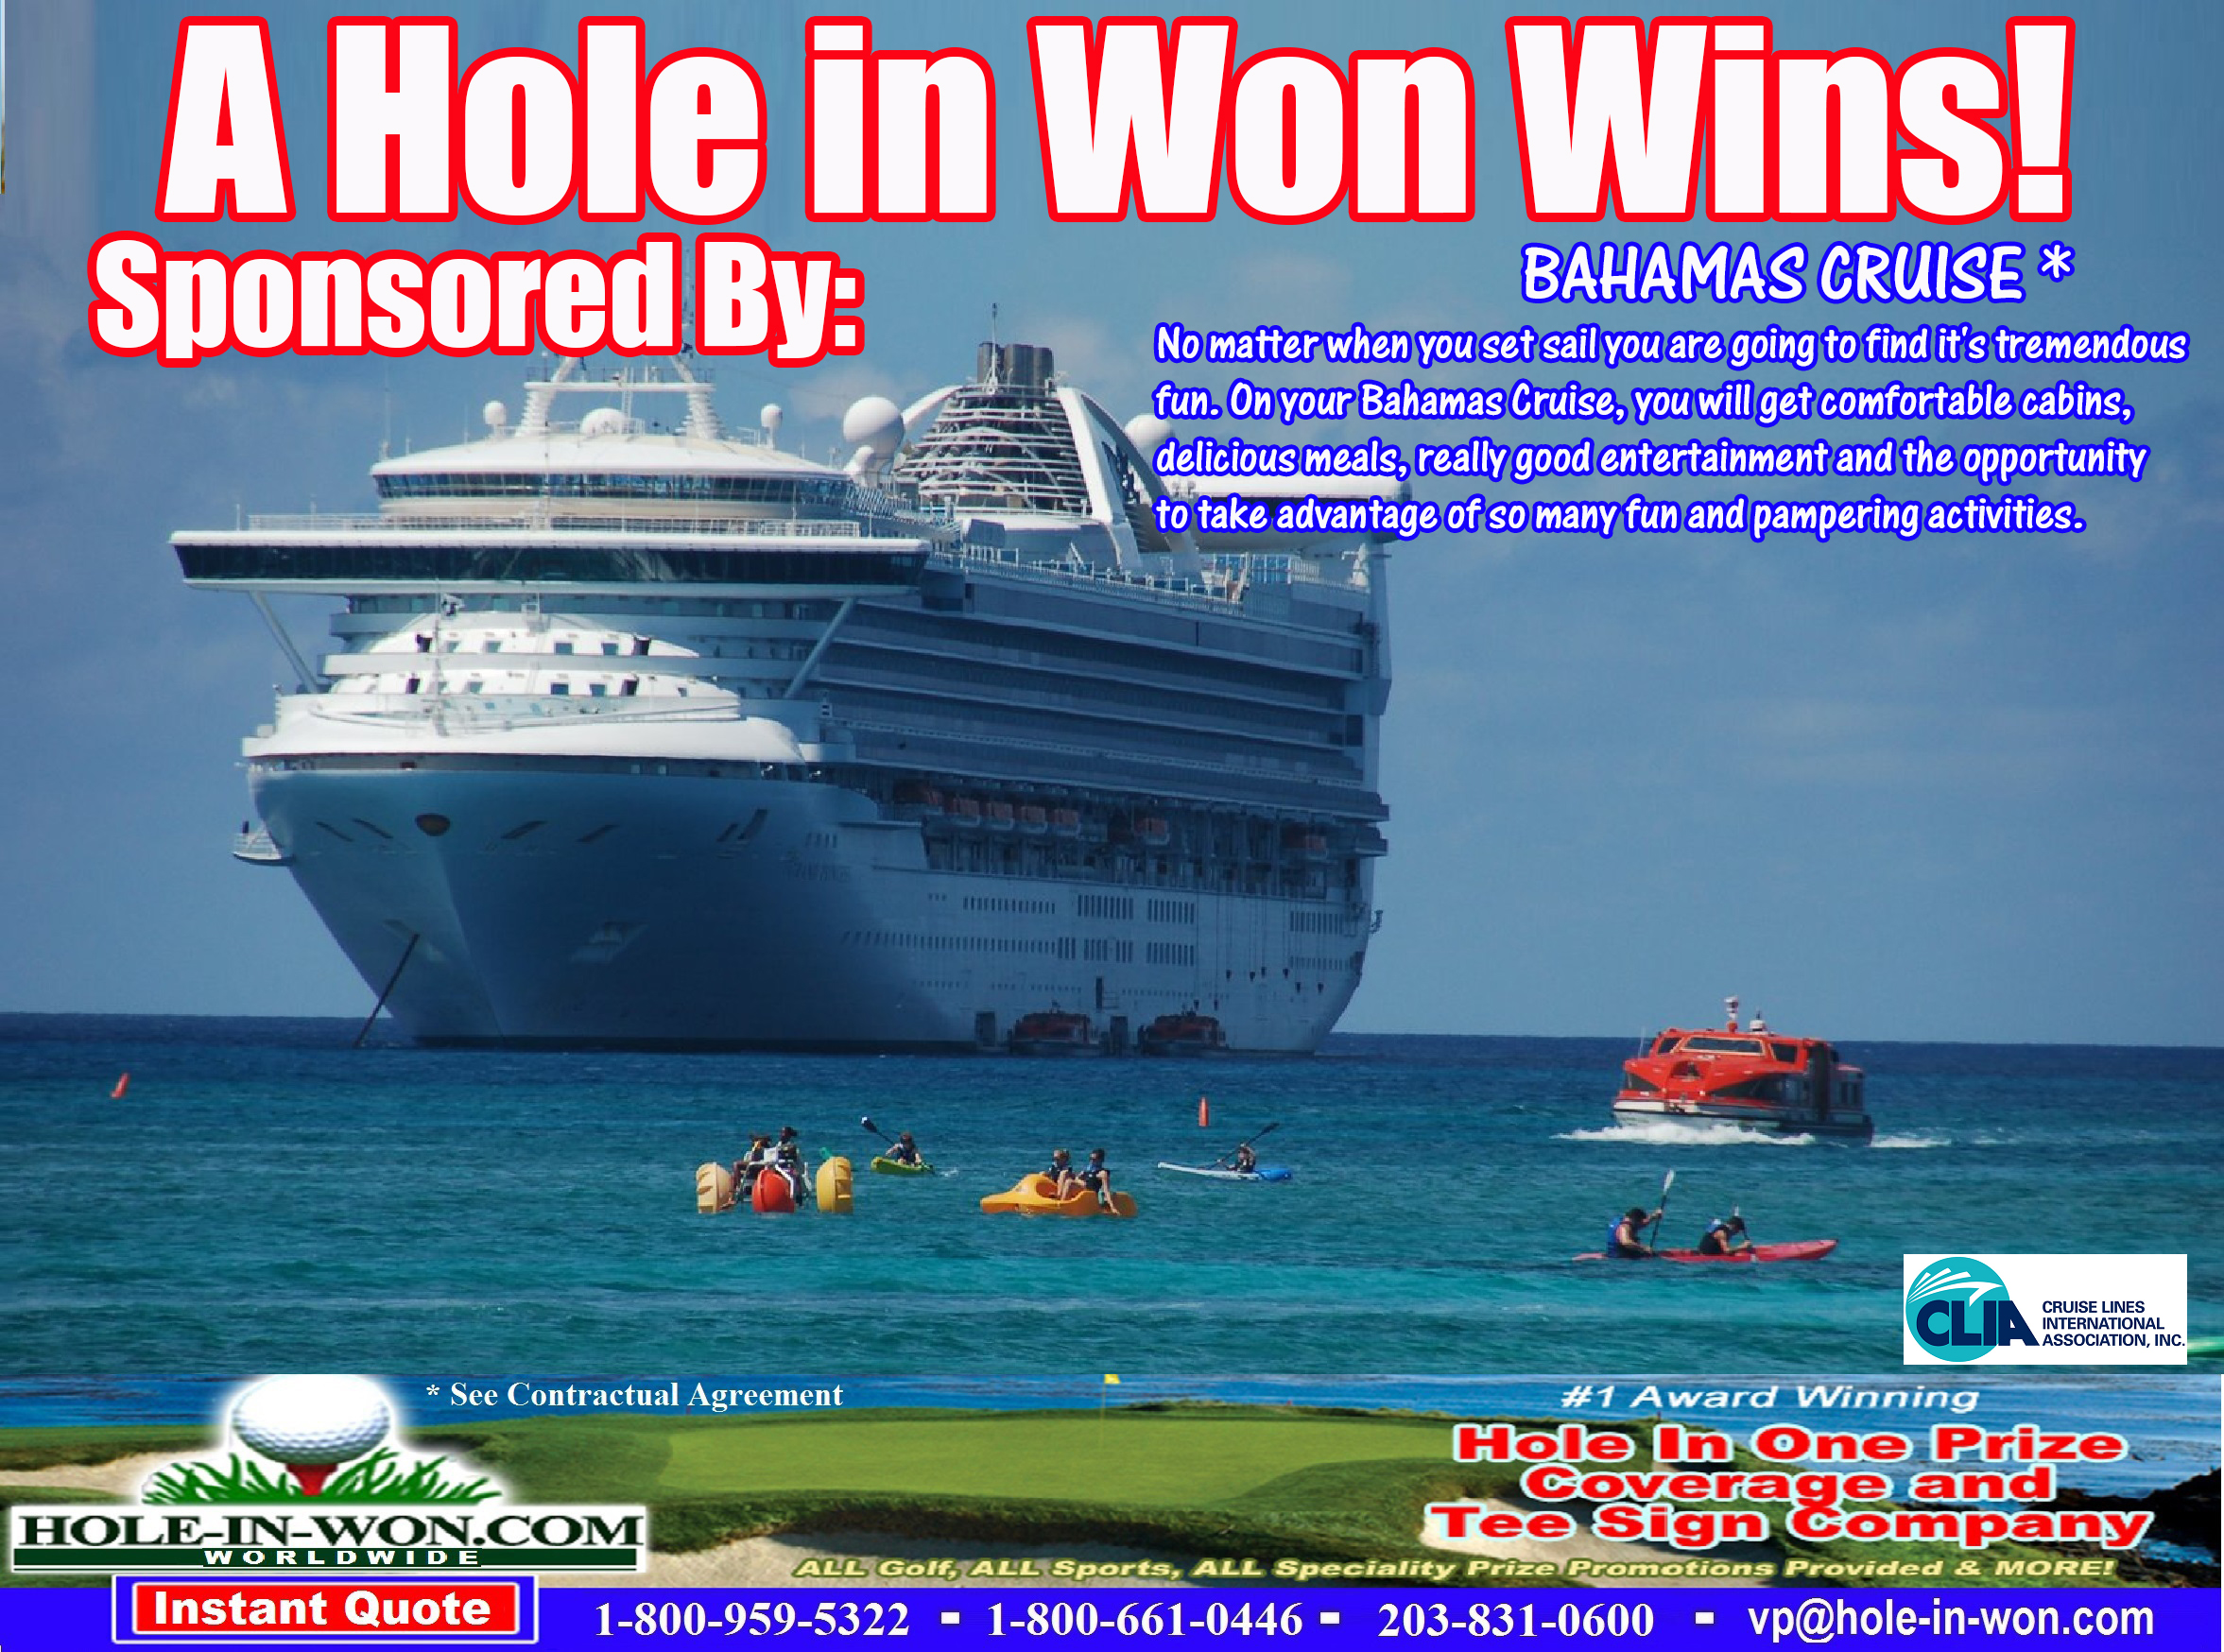 Bahamas Cruise Hole in One Golf Hole Sign